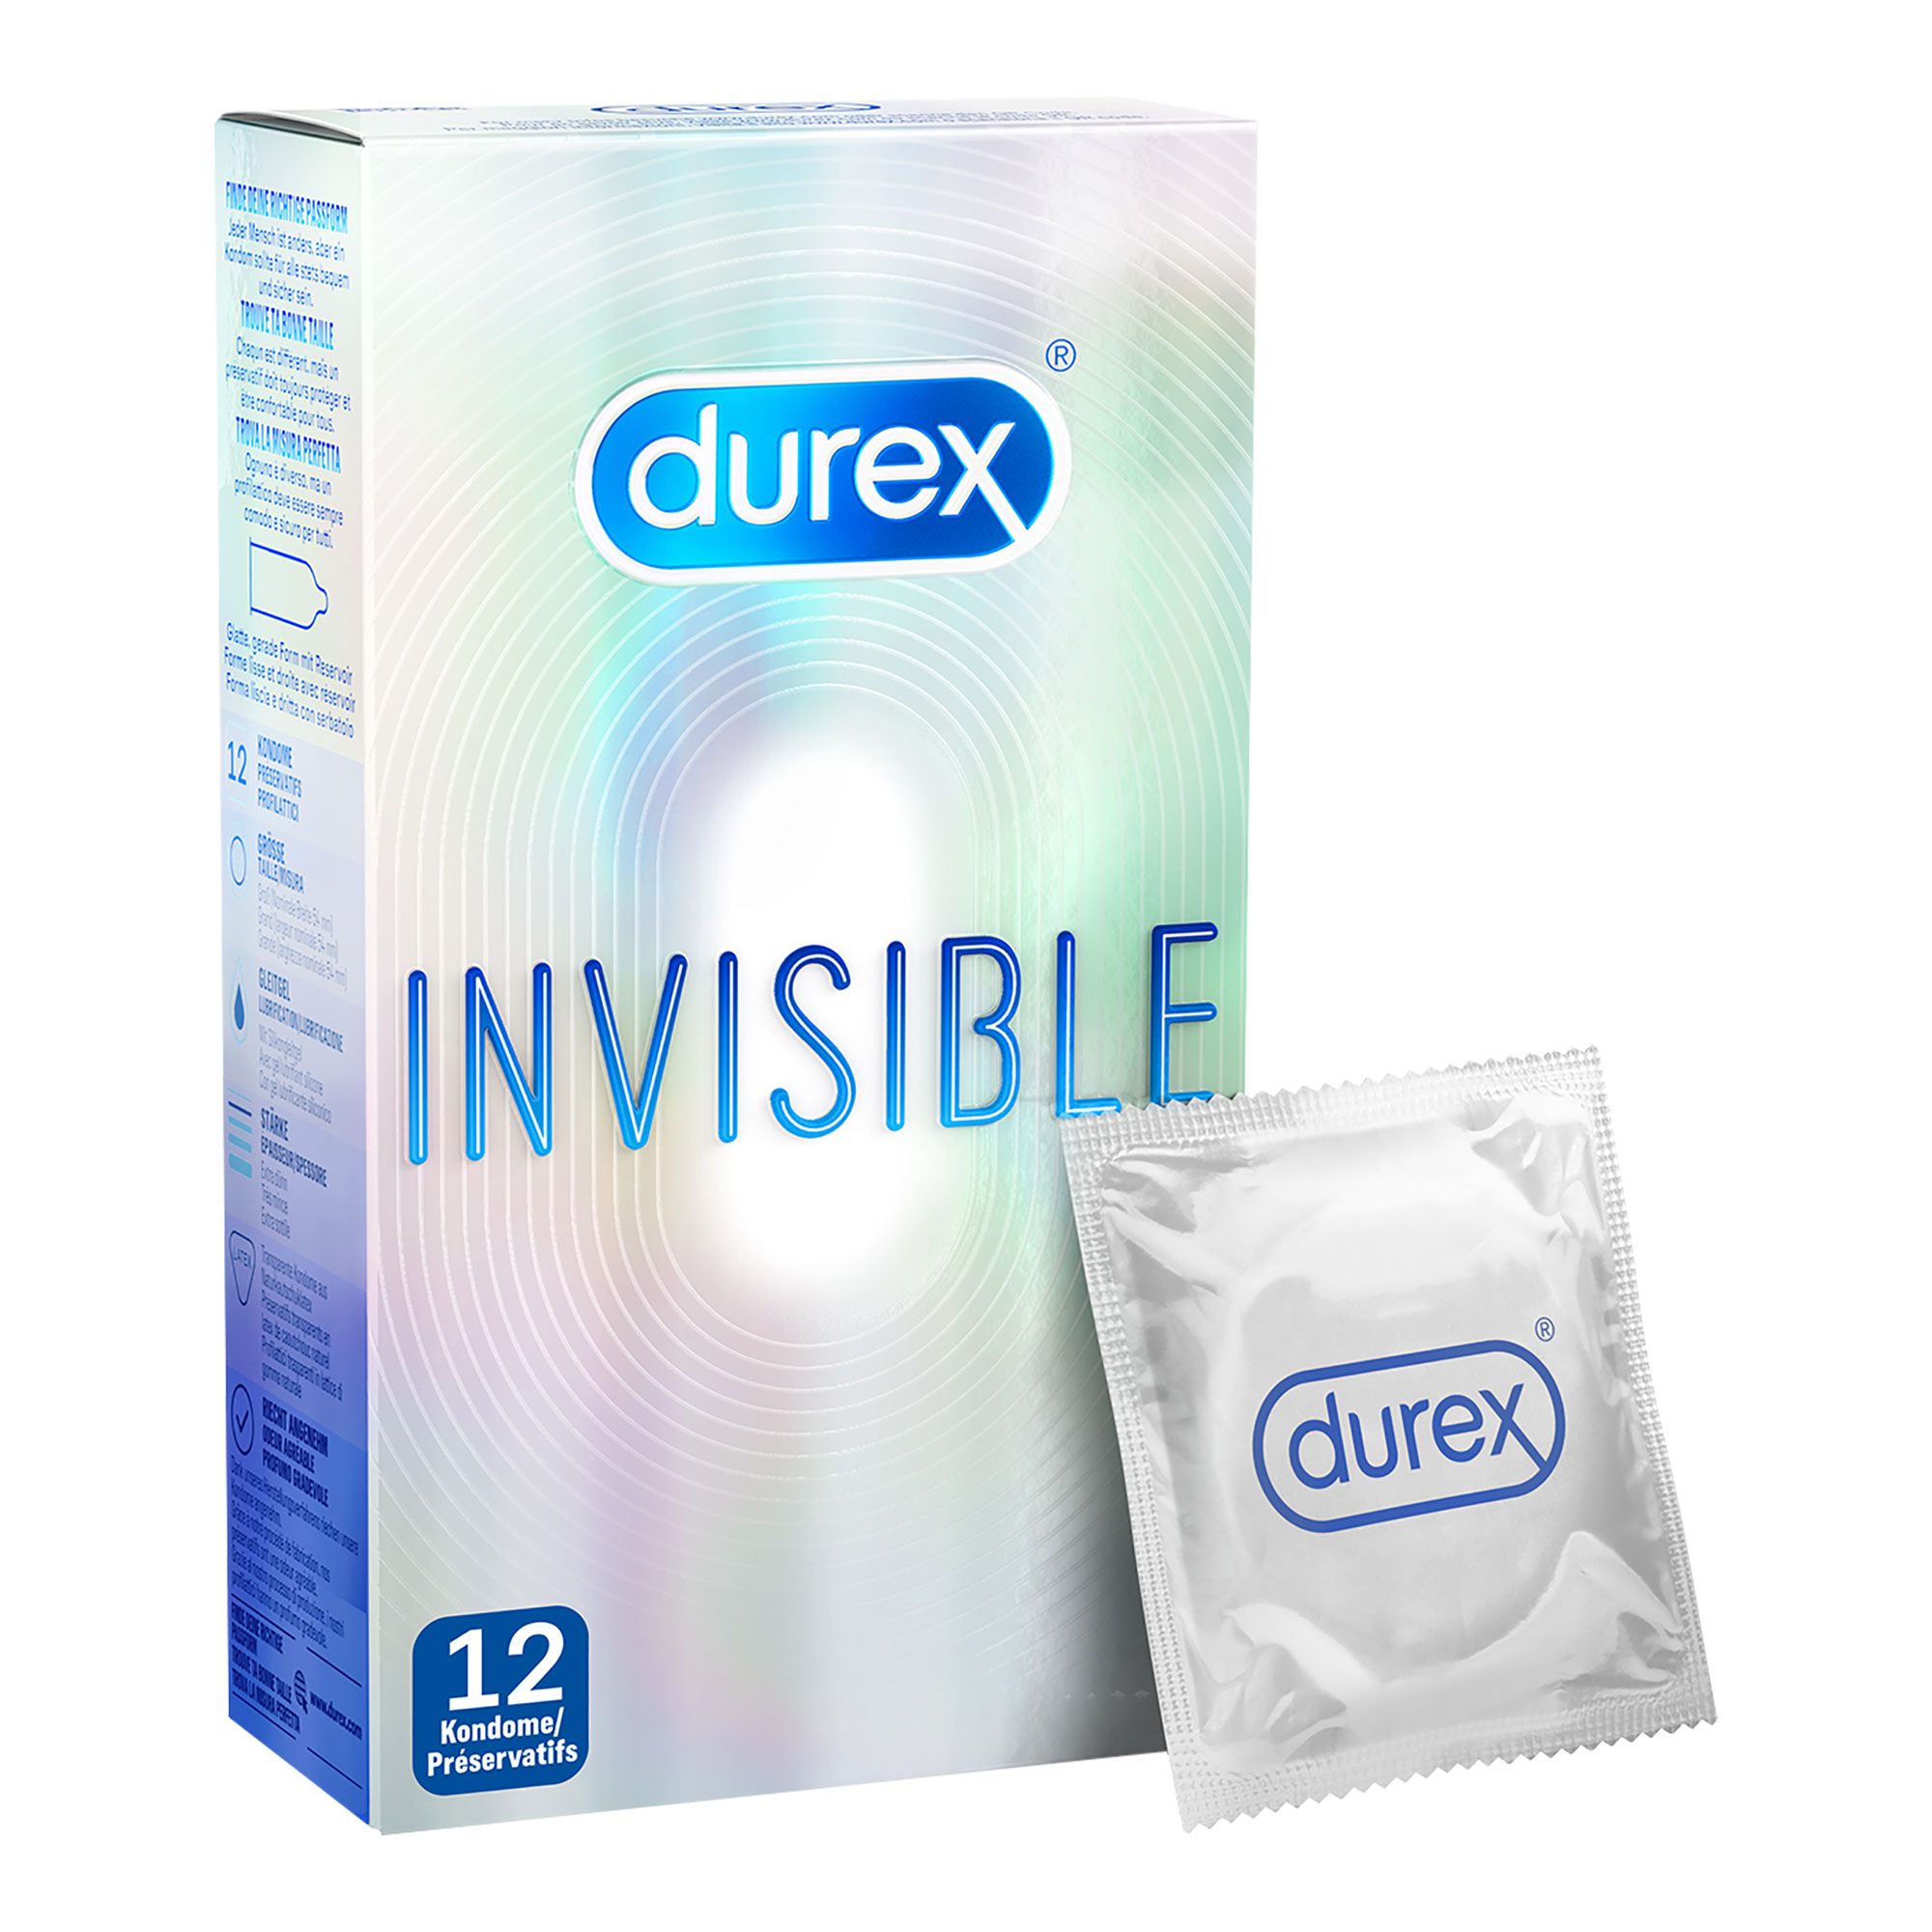 Extra dünne Kondome - für ein besonders intensives Empfinden.